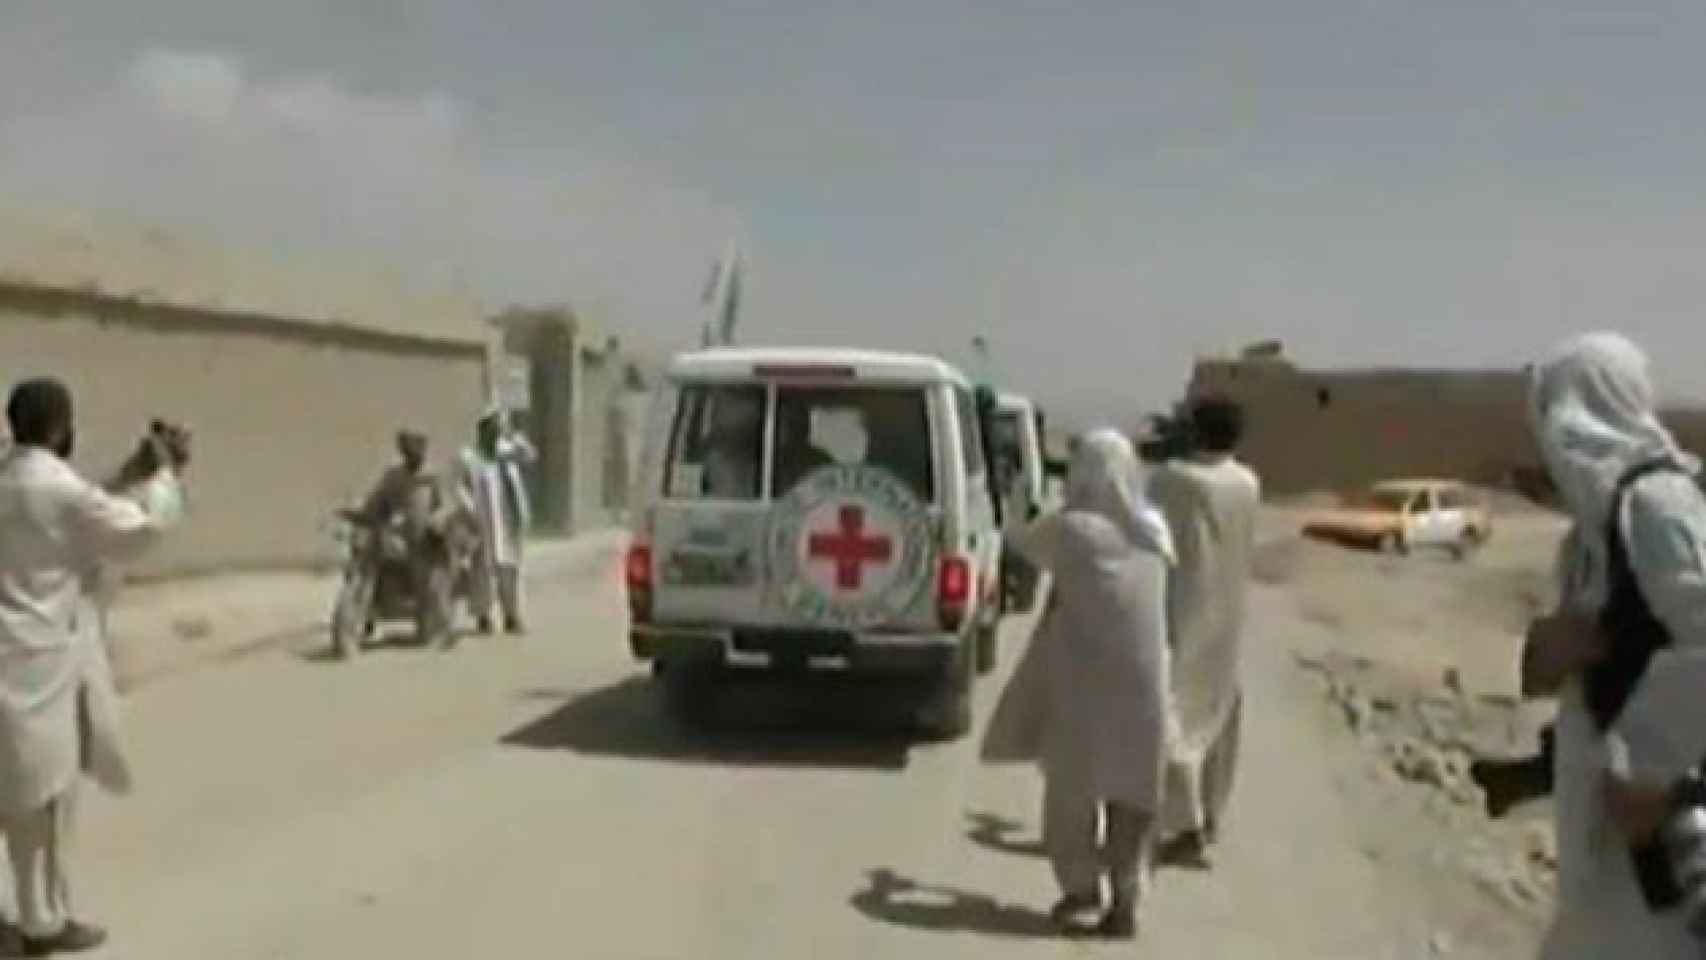 Vehículos de la Cruz Roja en Afganistán / TWITTERfgfgfgfVehículos de la Cruz Roja en Afganistán / TWITTERfgfgfgfVehículos de la Cruz Roja en Afganistán / TWITTERfgfgfgfVehículos de la Cruz Roja en Afganistán / TWITTERfgfgfgfVehículos de la Cruz Roja en Af